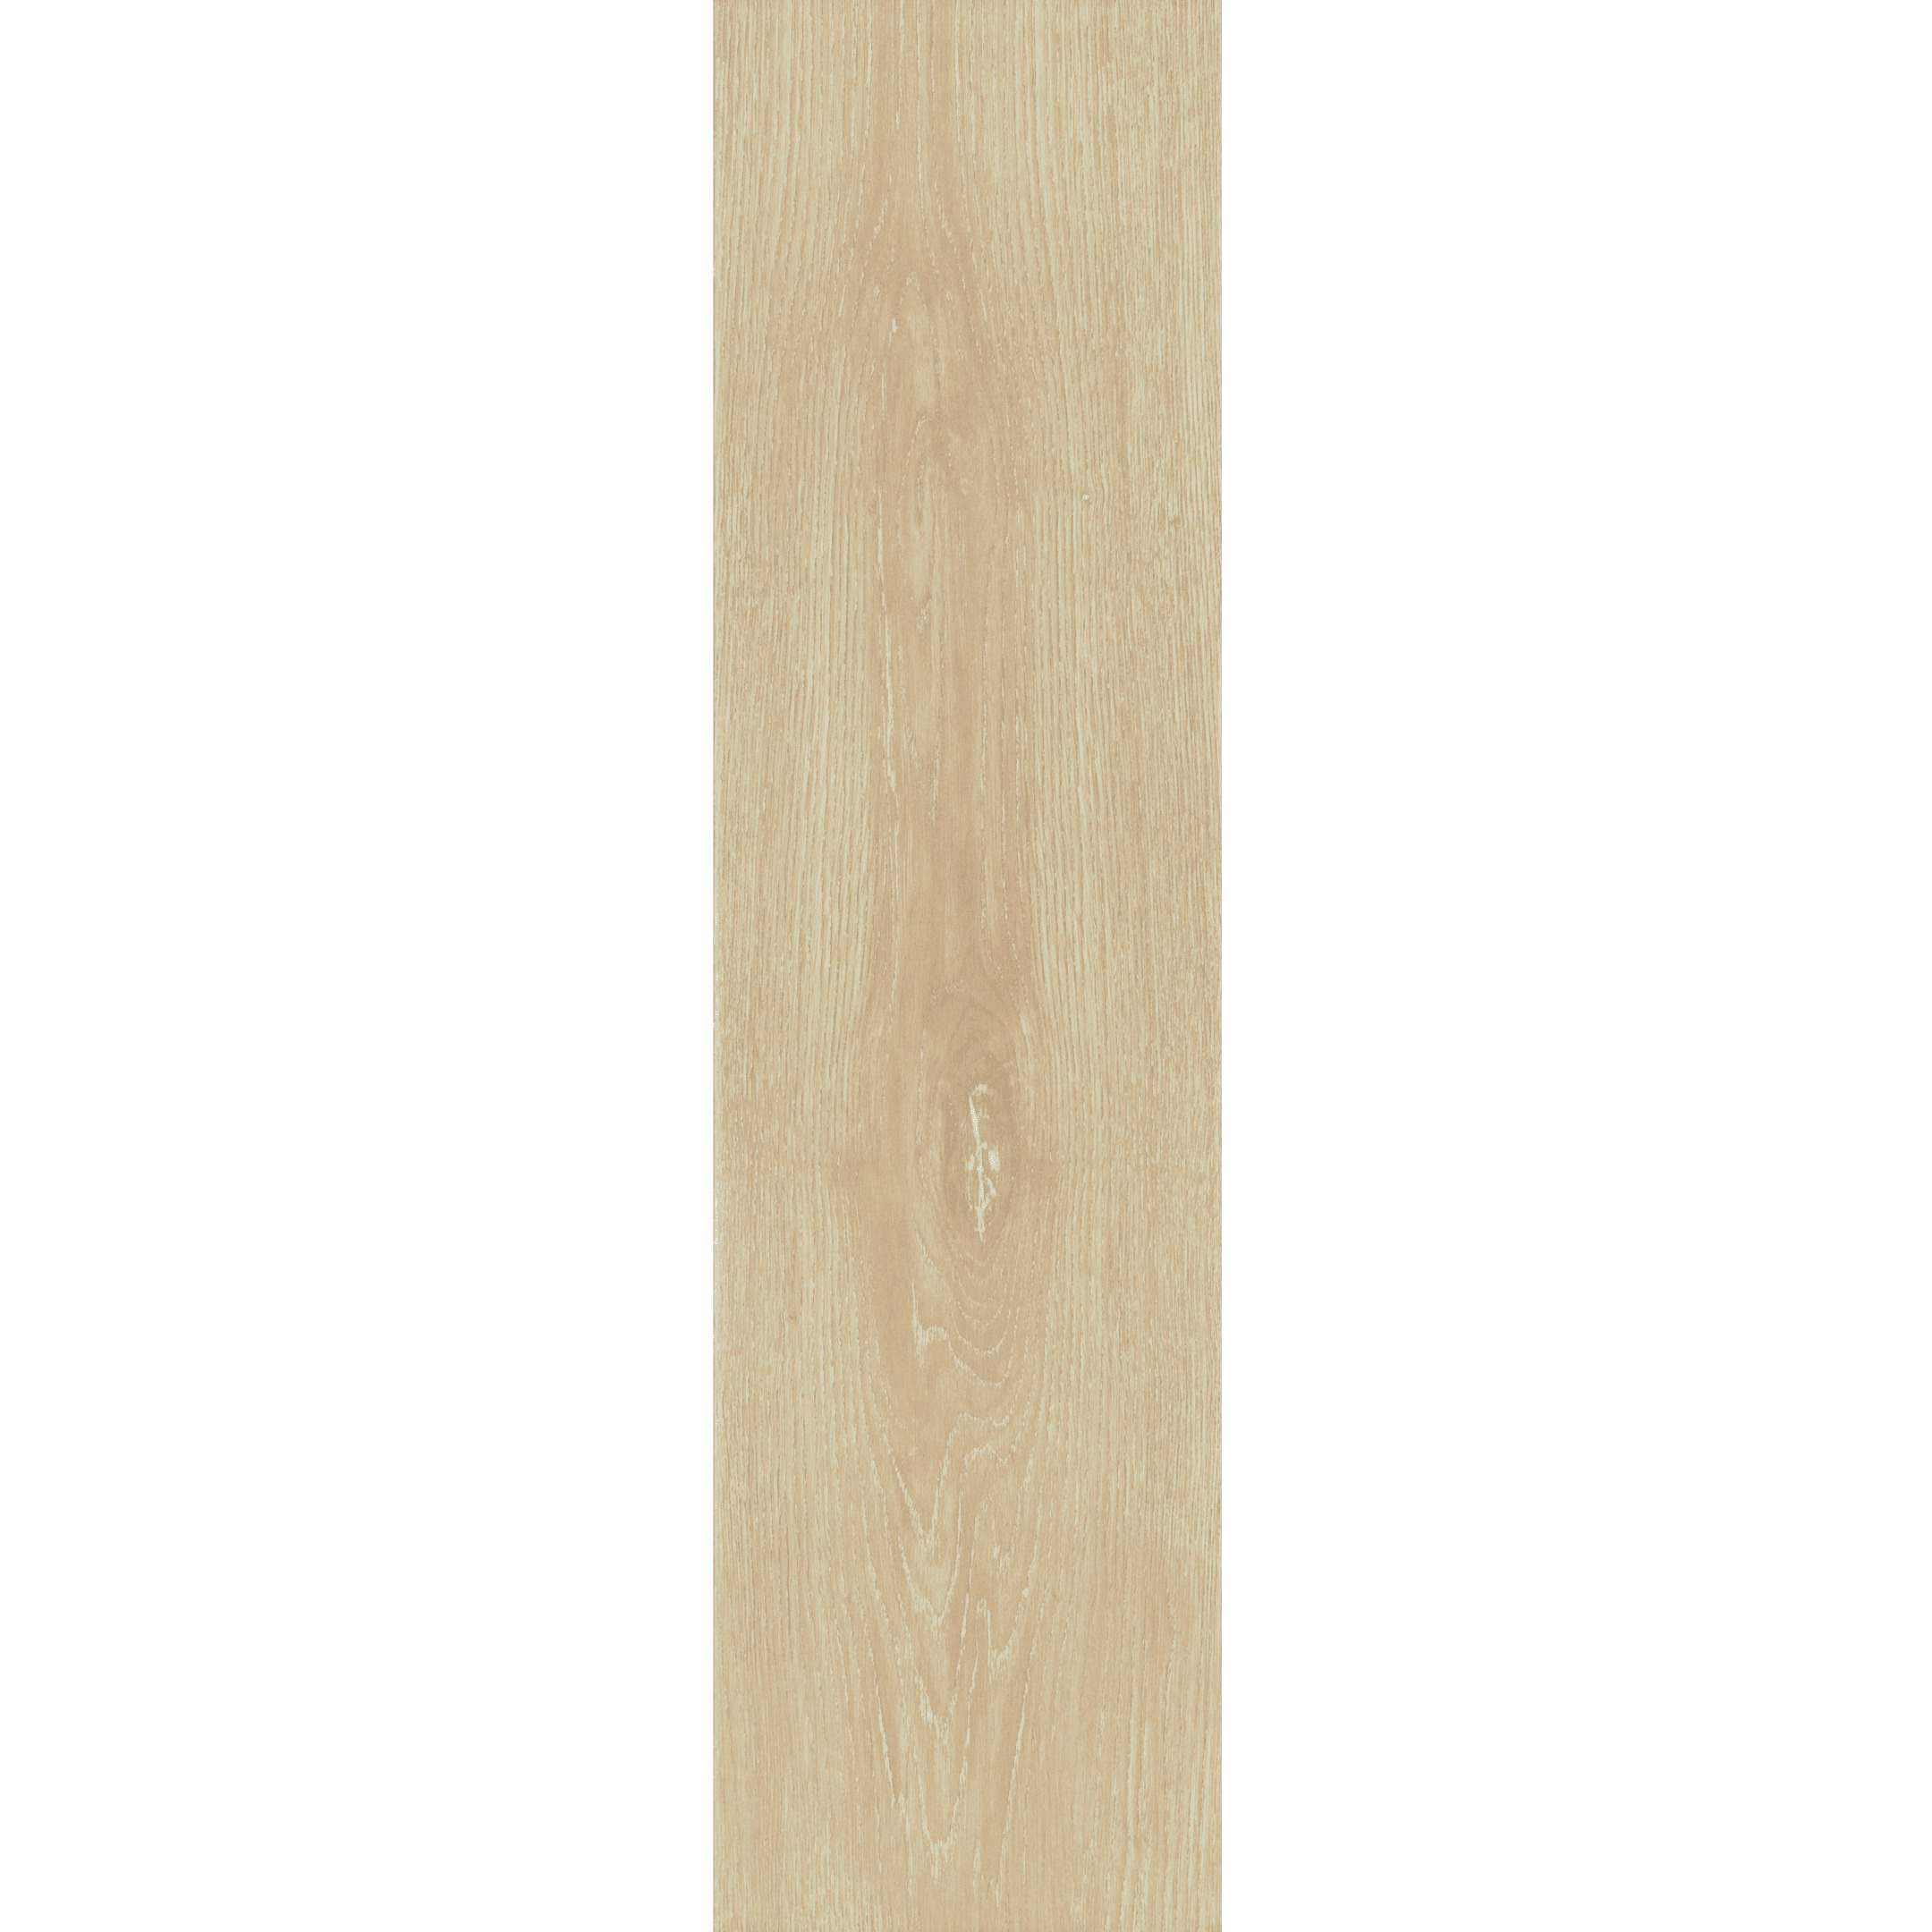 фото Керамогранит cersanit patinawood бежевый 598х185х8,5 мм (9 шт.=0,99 кв.м)